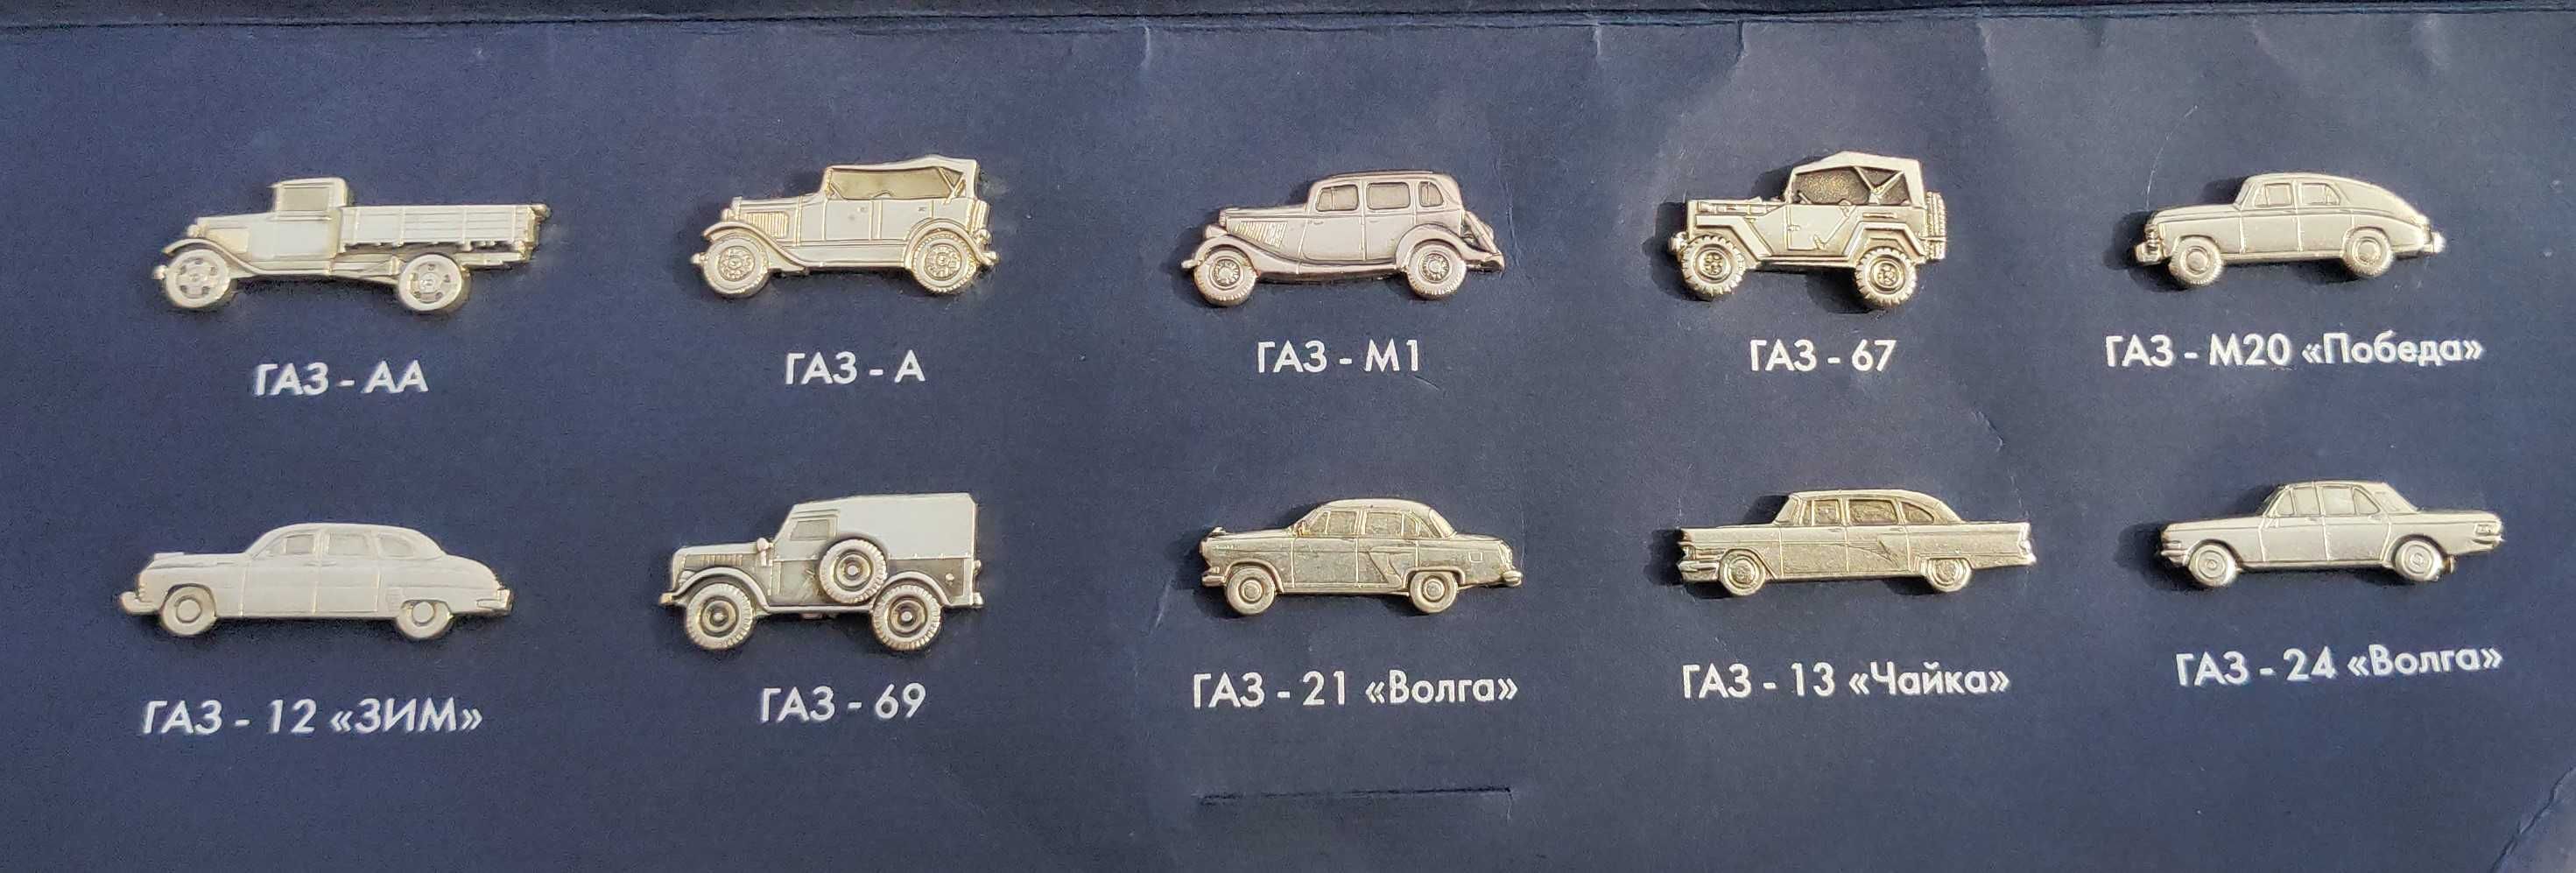 Коллекционный набор булавочных значков марки Газ